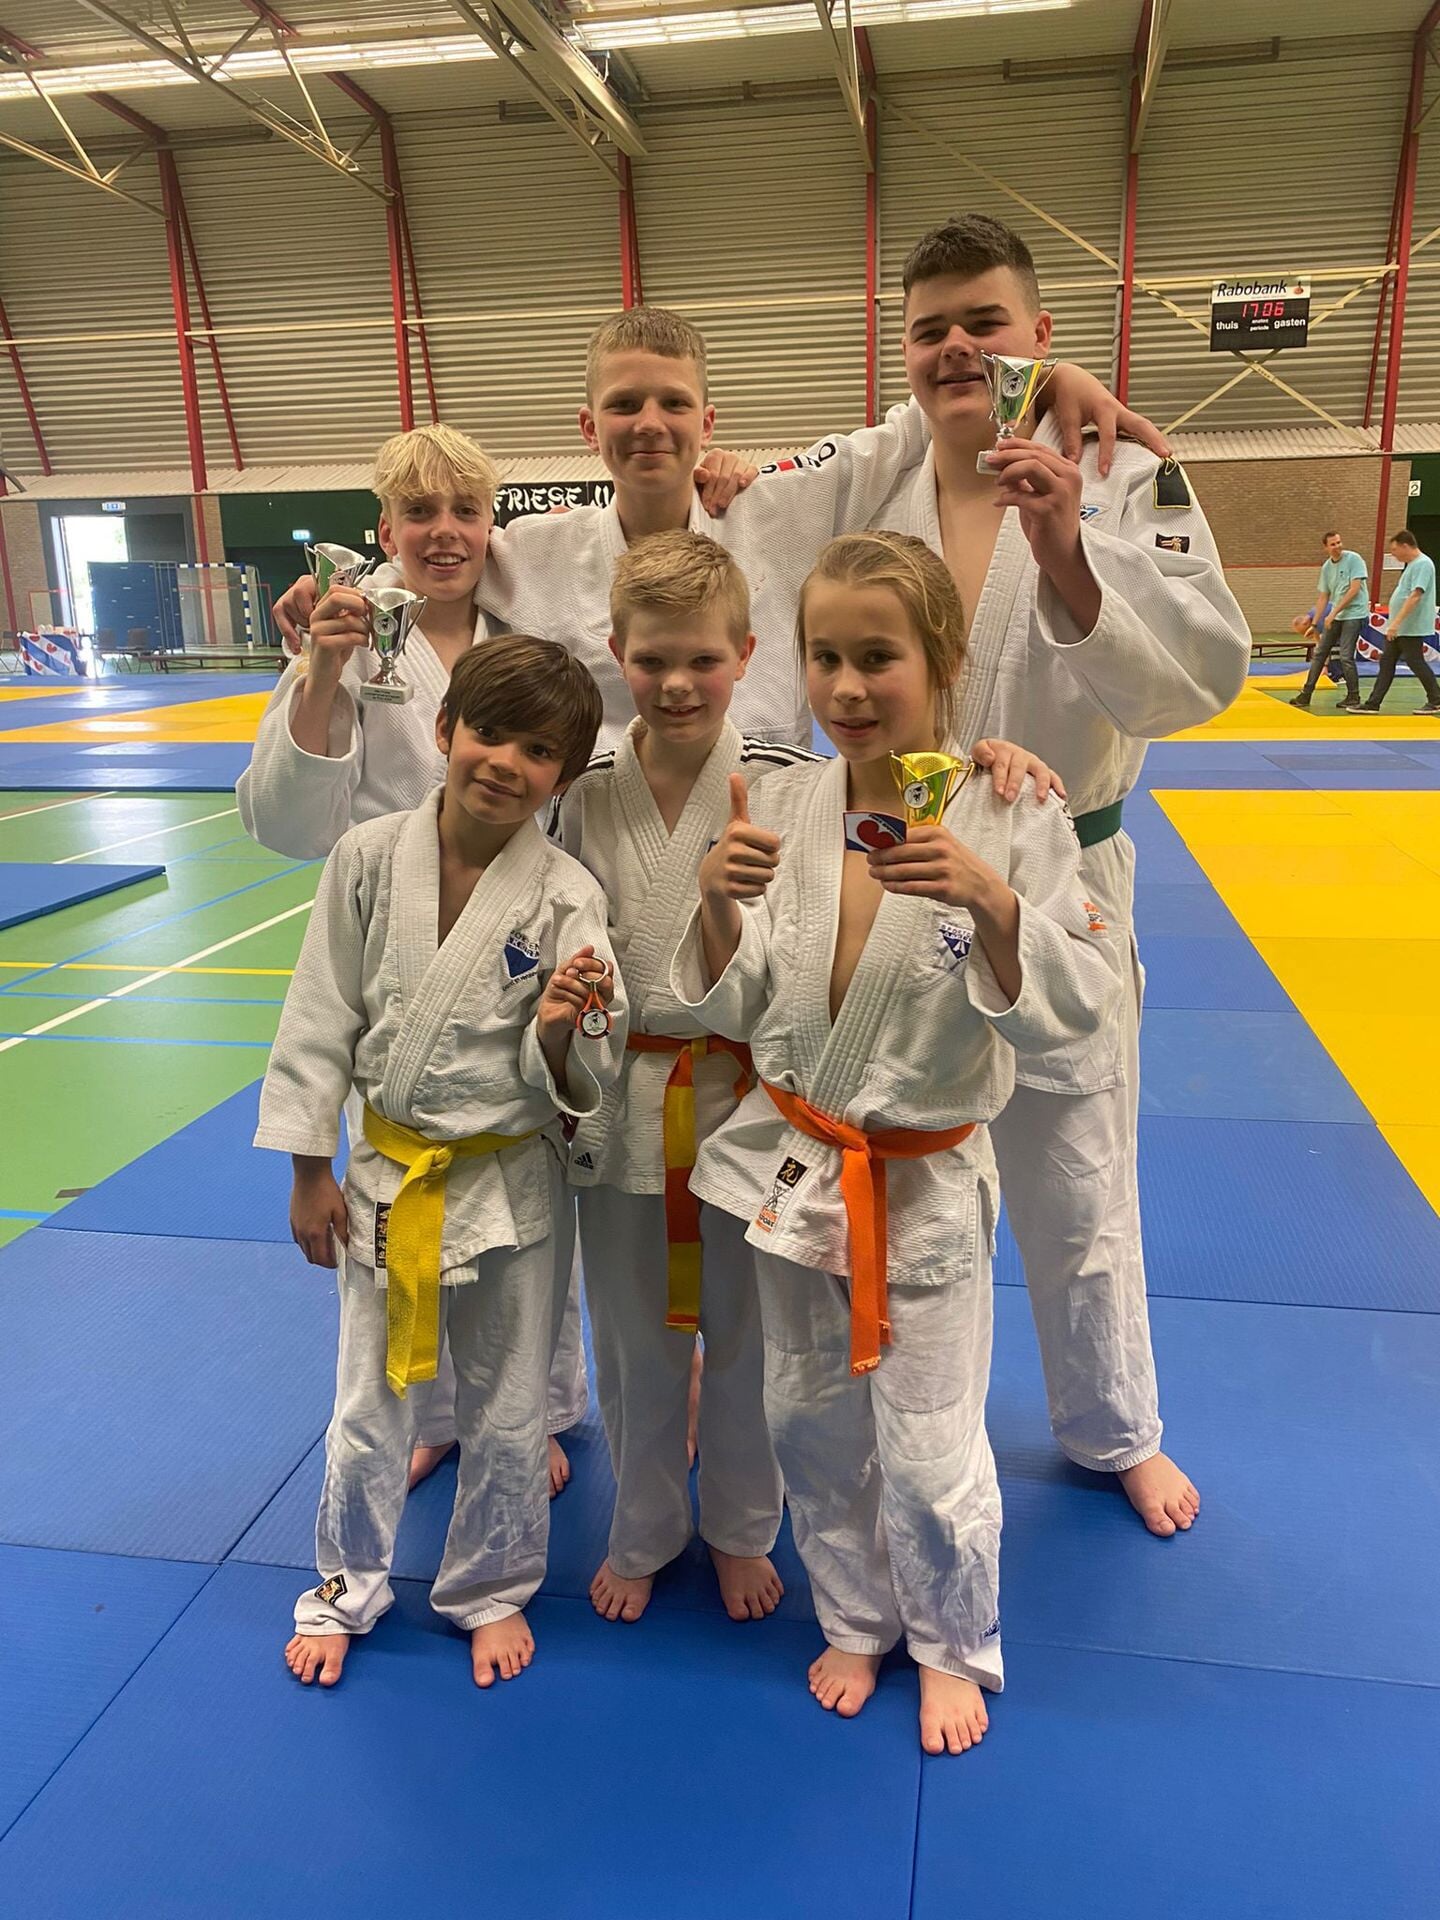 Prijzenfestijn Akkermans judoka’s uit Wommels op de Friese Kampioenschappen